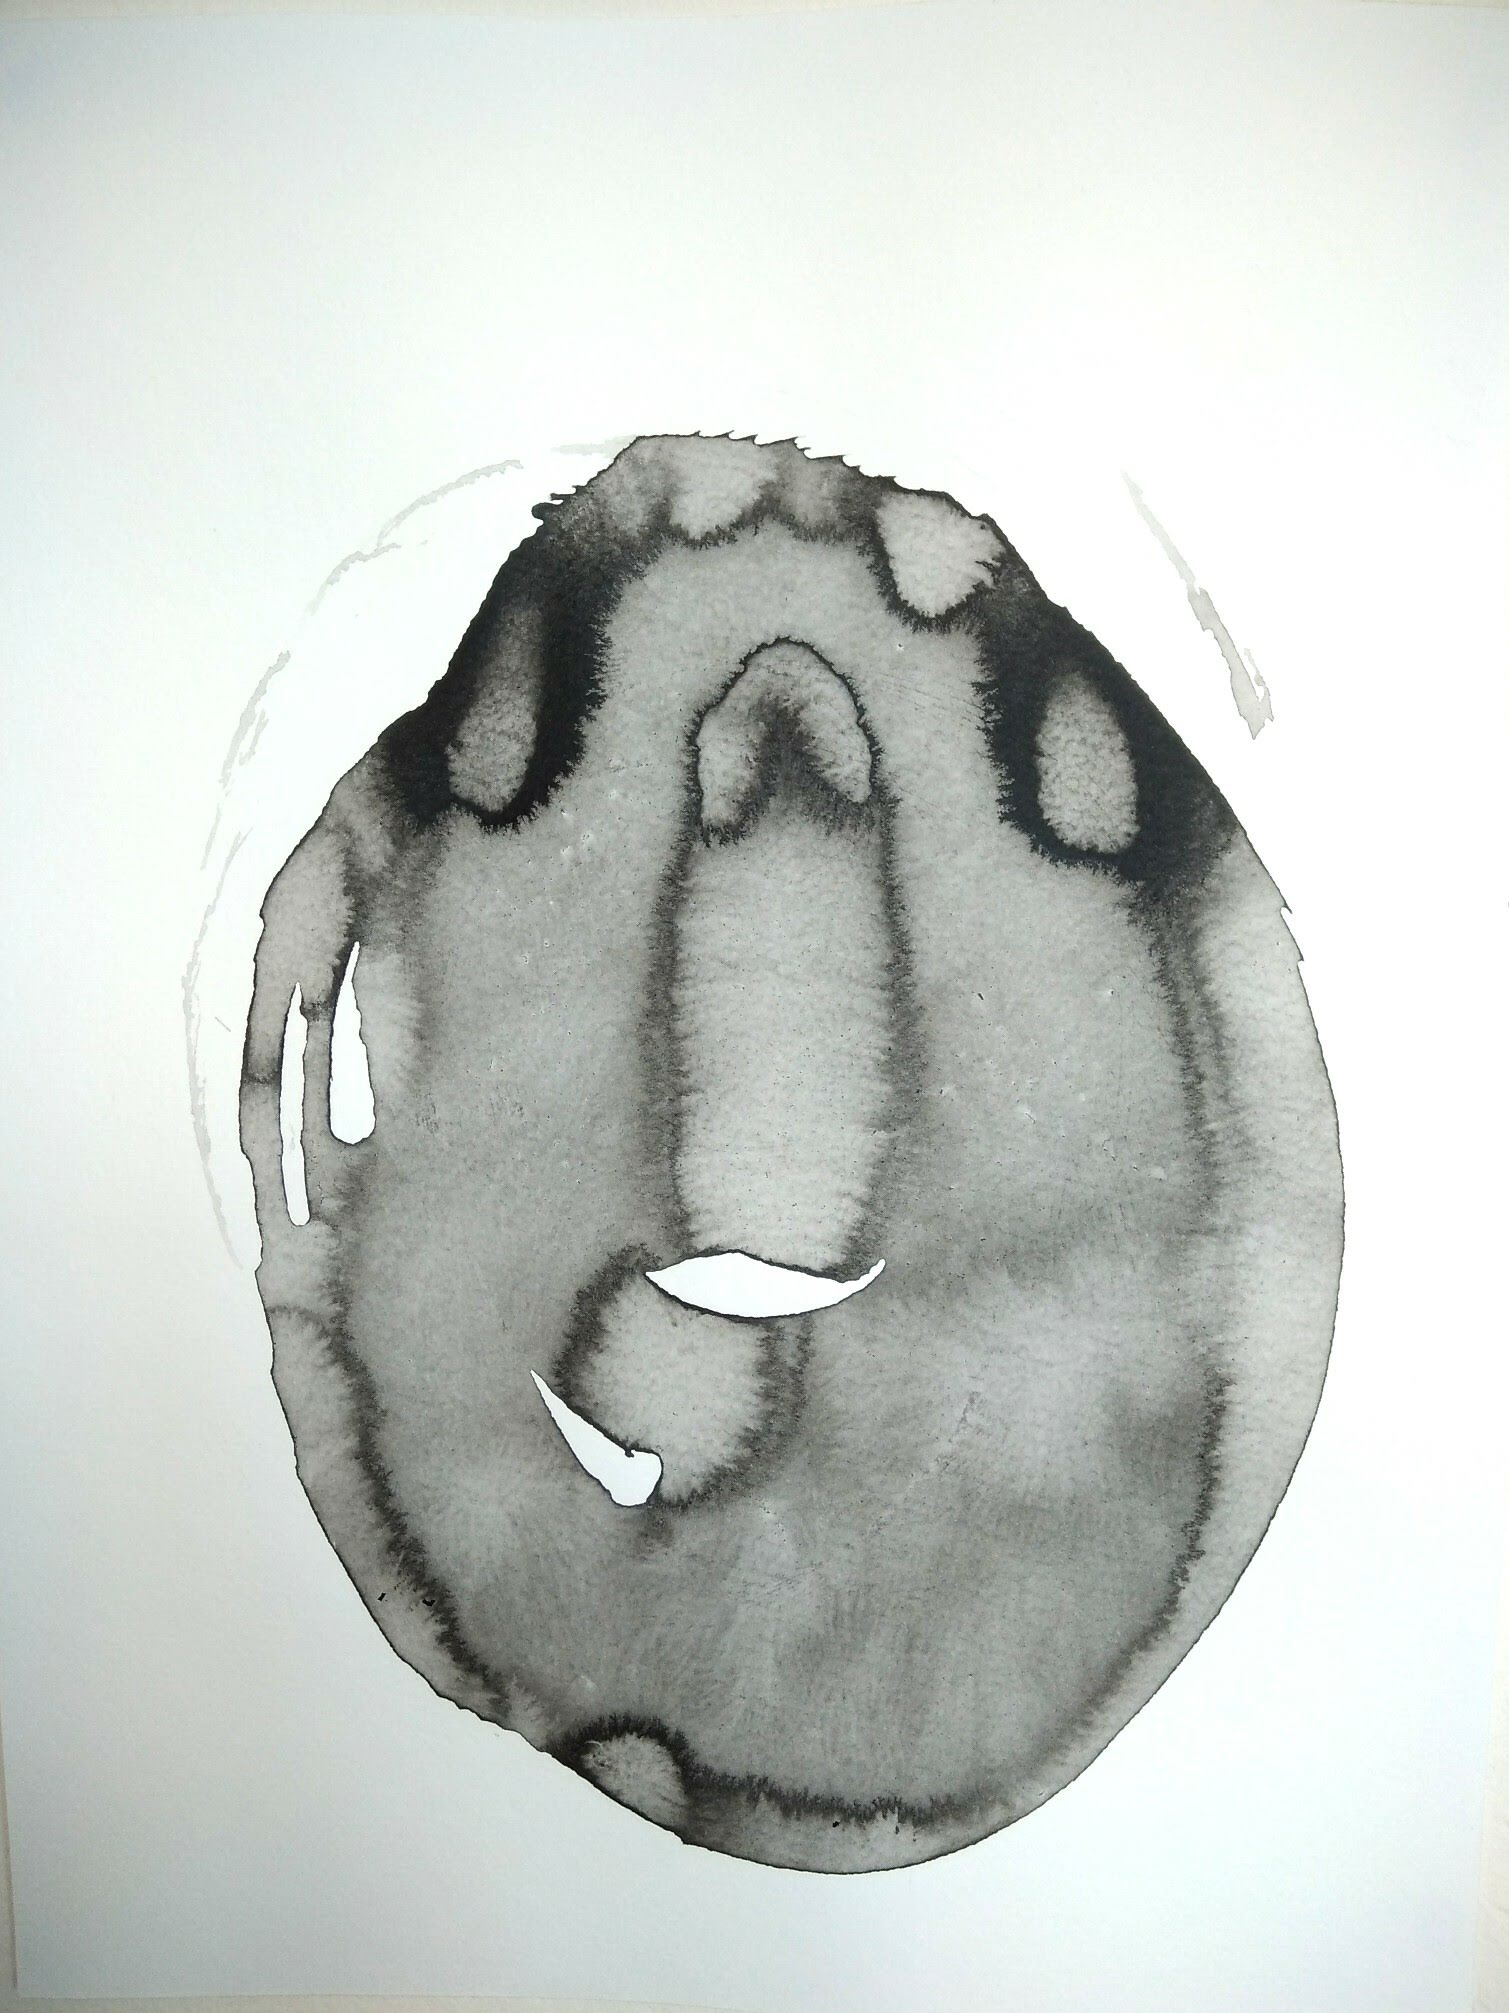 Axiale 01 (encre de Chine sur papier aquarelle), ilona Tikvicki, 2020.